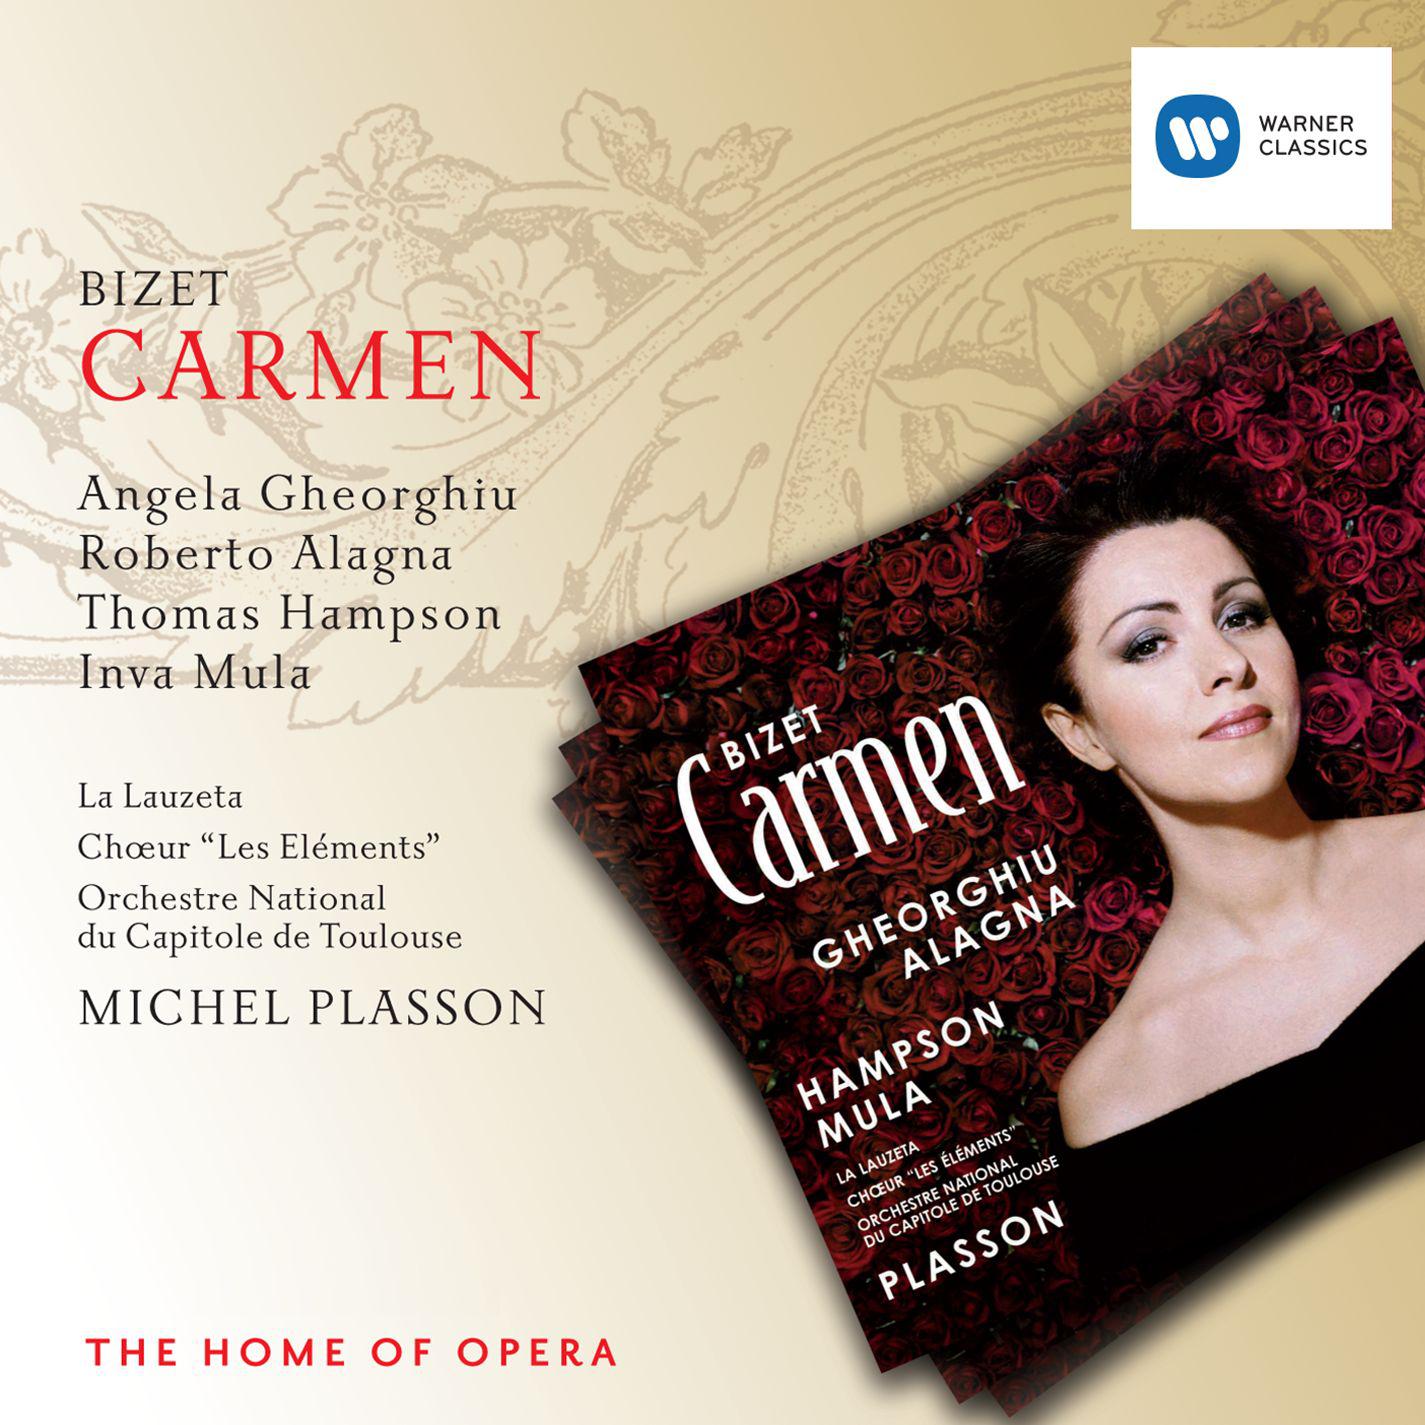 Carmen, Act III, No. 20 Trio: En vain pour e viter Carmen